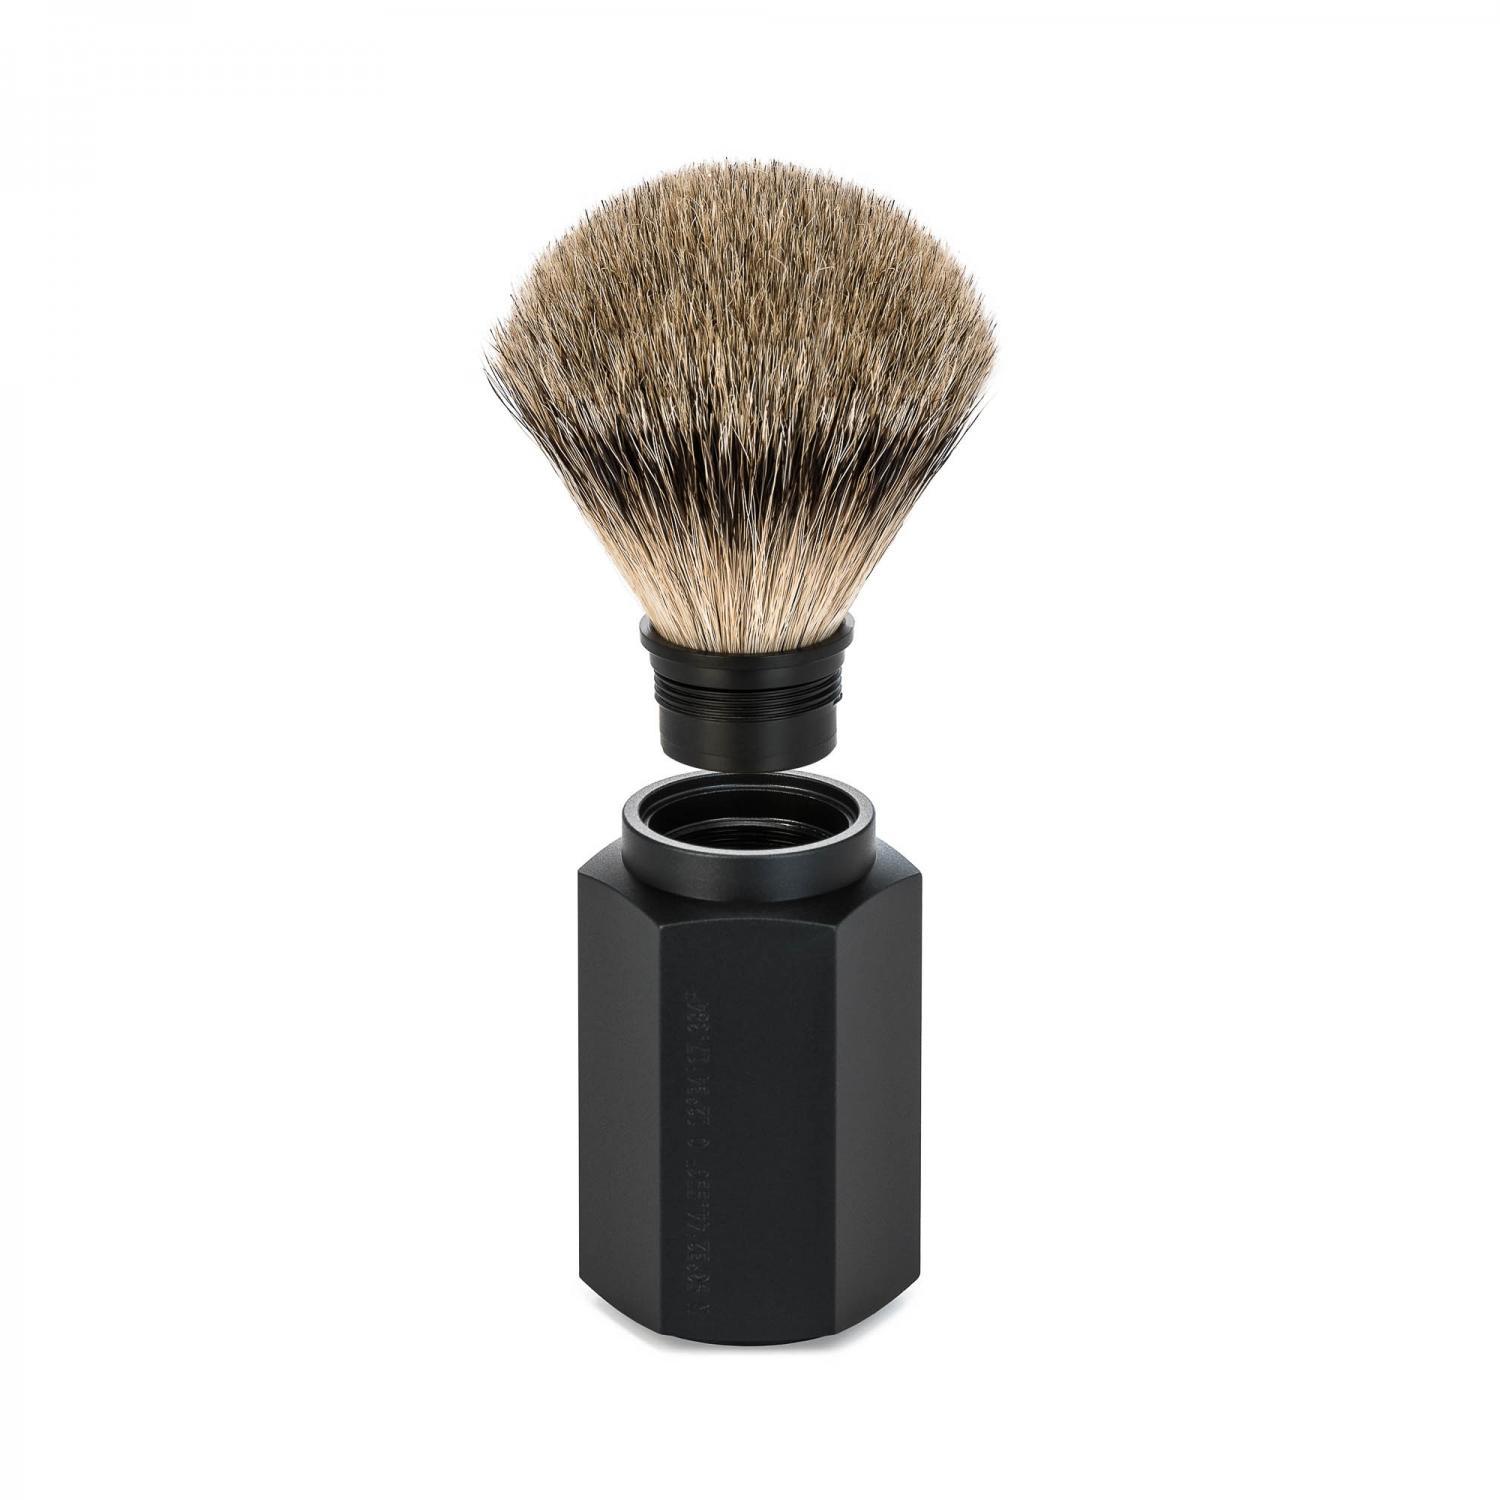 MUHLE HEXAGON Graphite Silvertip Badger Shaving Brush